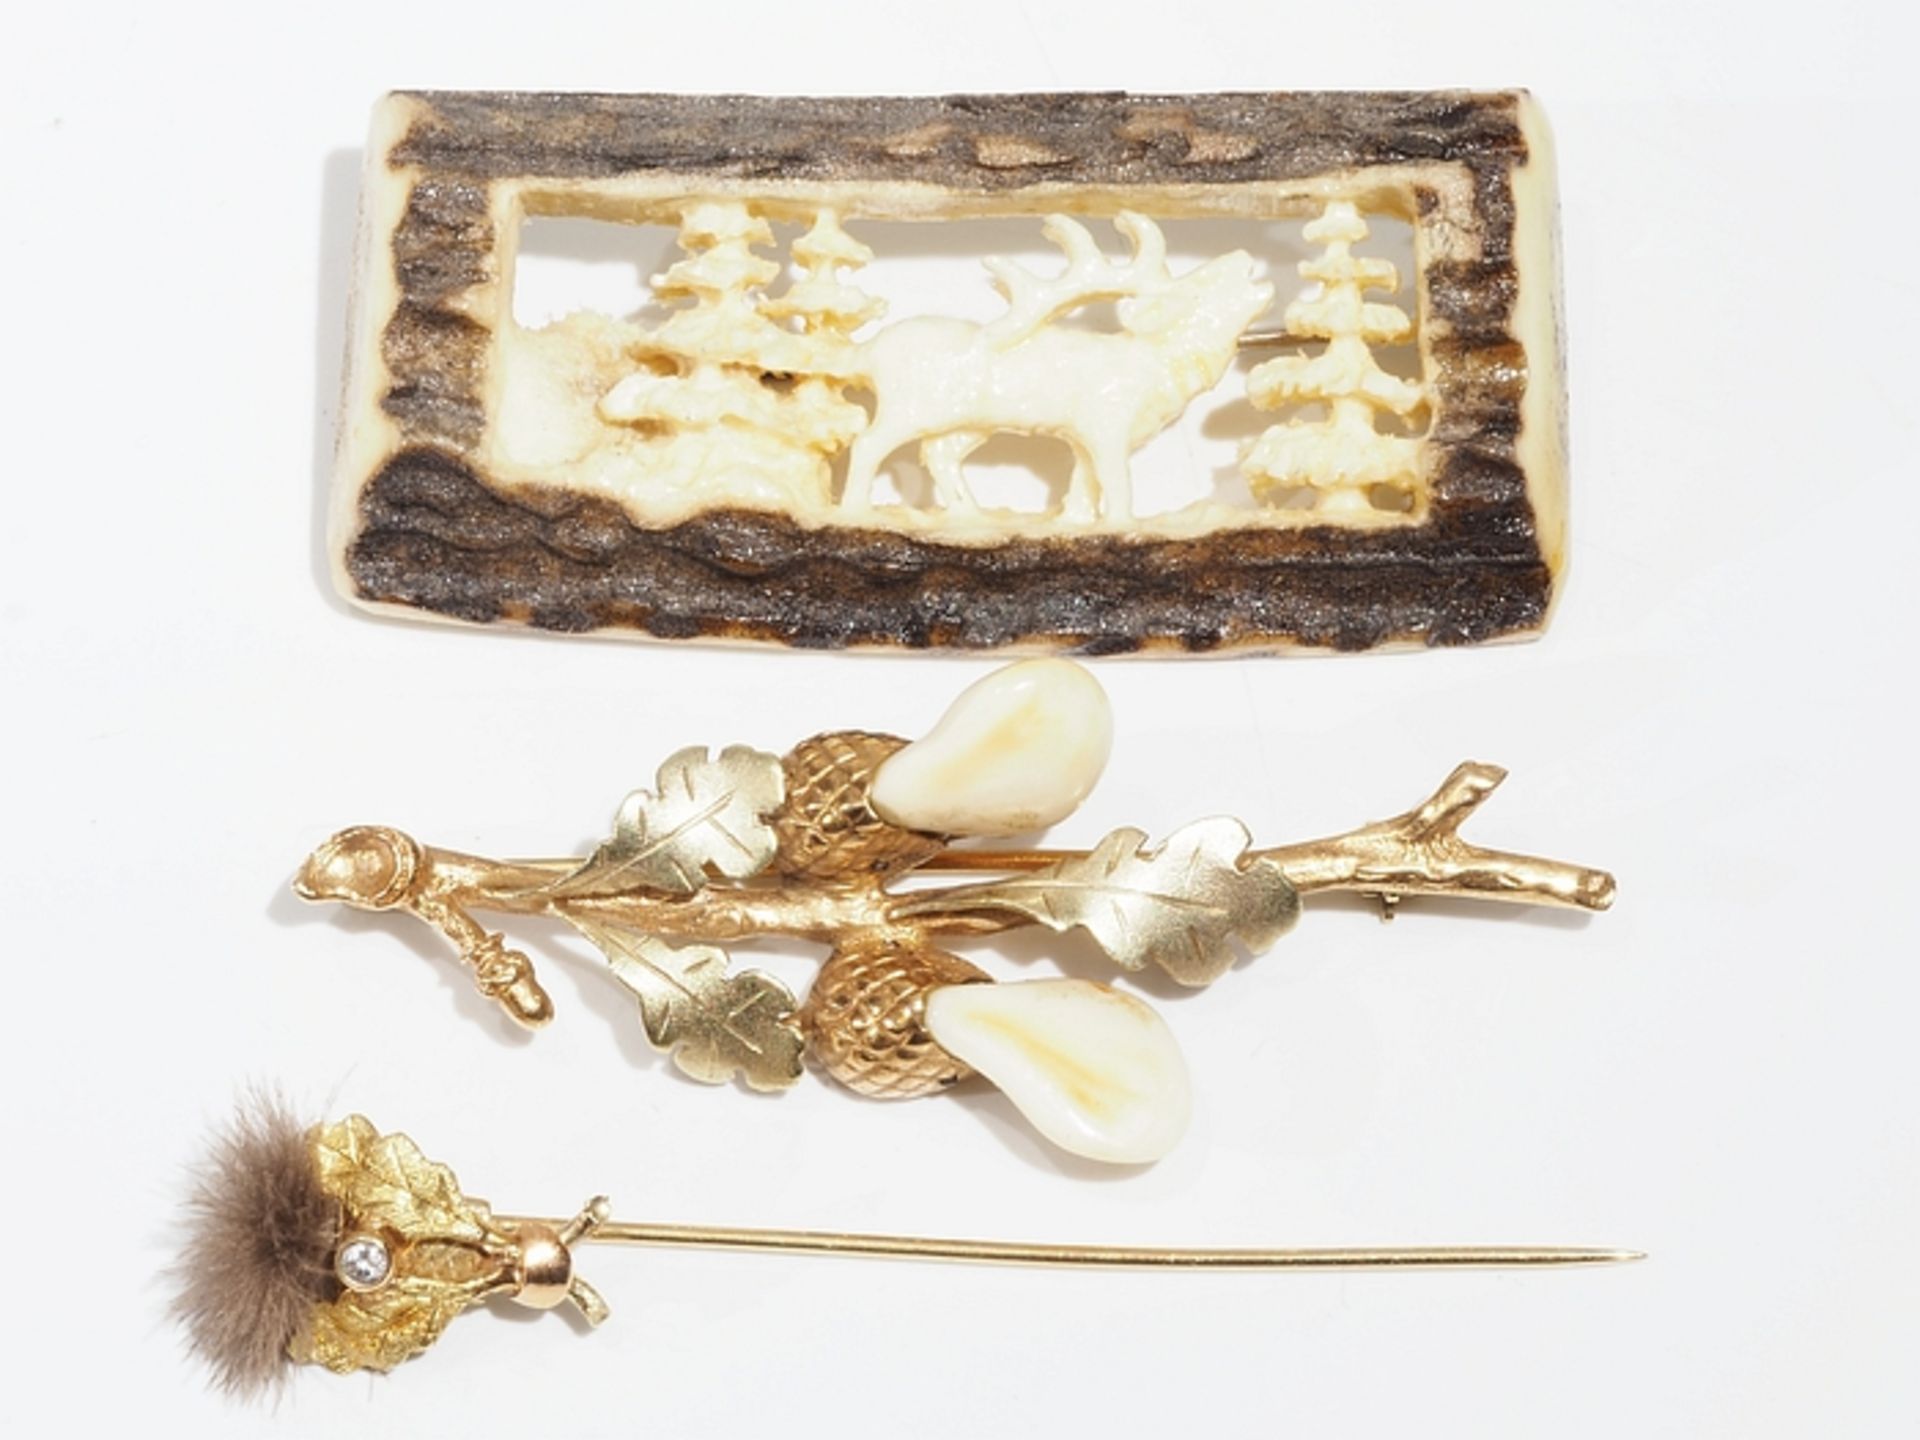 Trachtenschmuck, drei Teile. 1) Brosche, Bouquet aus Eichenlaubzweigen mit zwei Grandeln besetzt